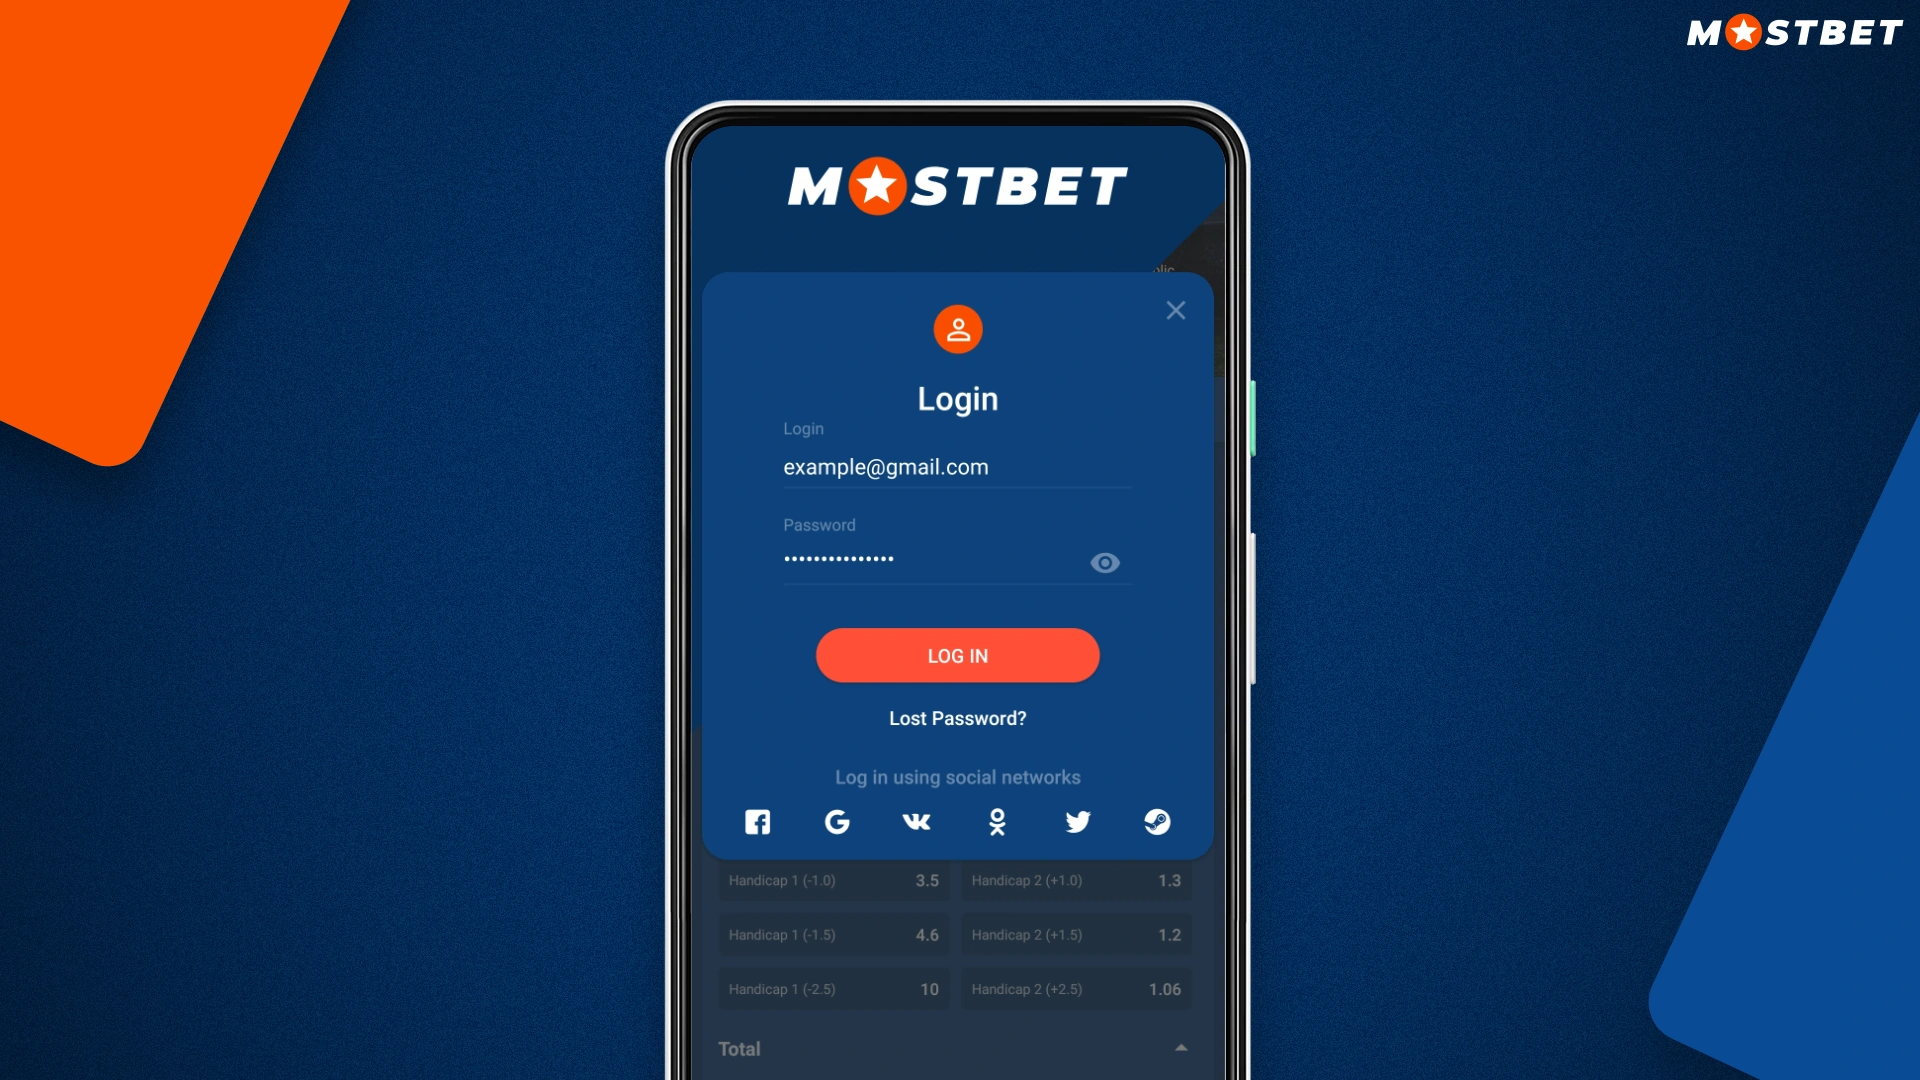 Aby zalogować się na swoje konto w aplikacji Mostbet, należy użyć danych podanych podczas rejestracji